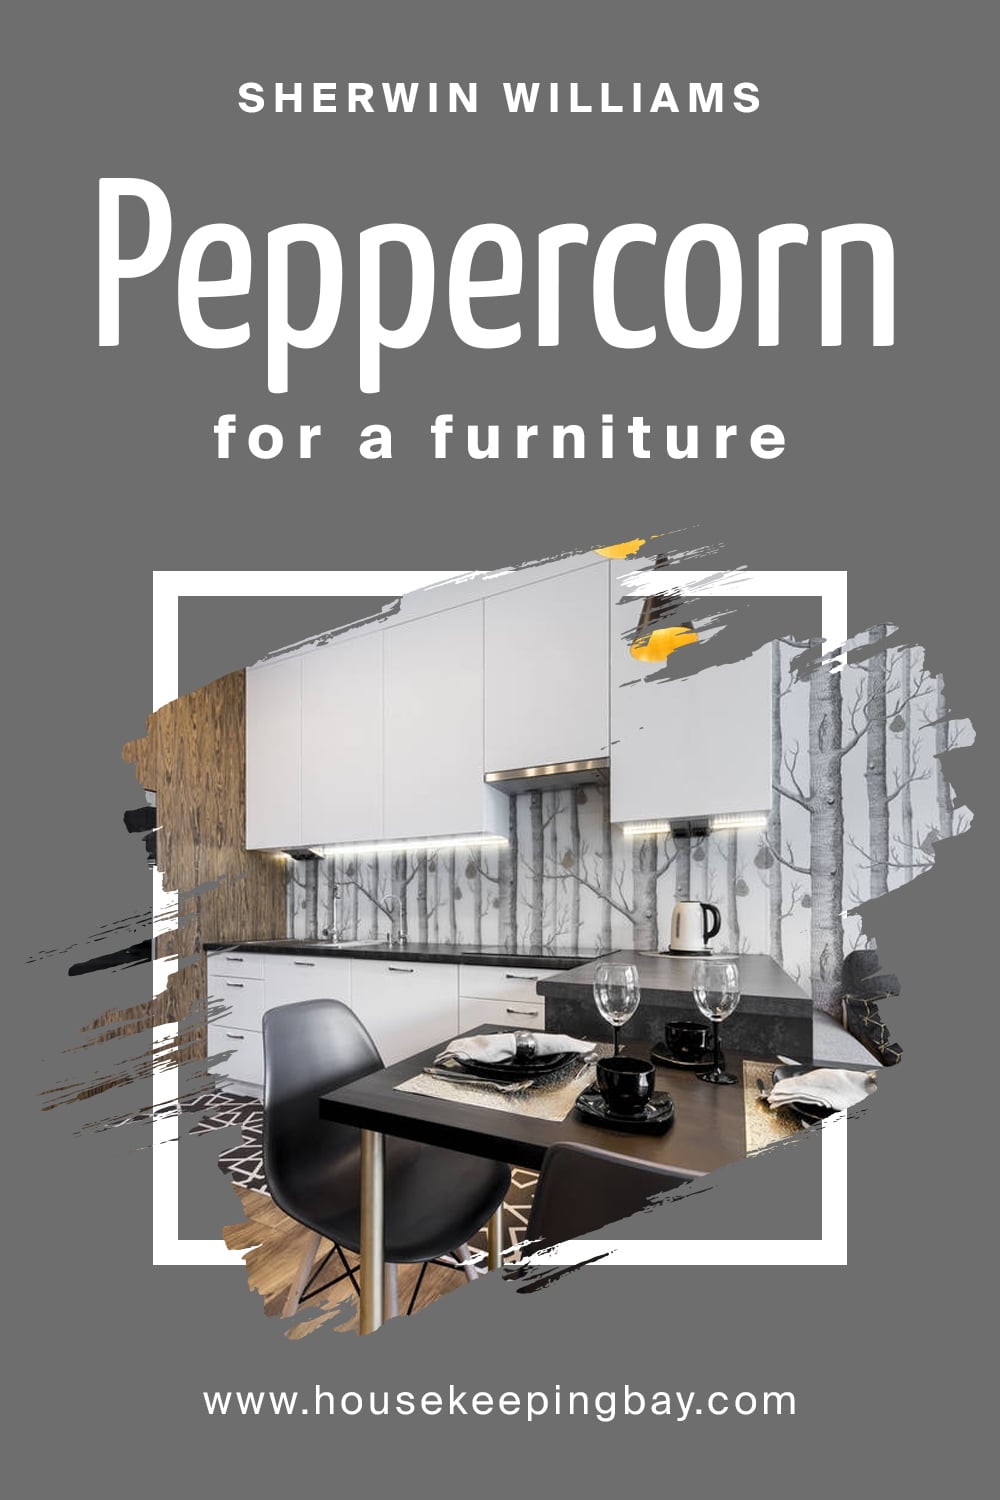 Peppercorn for a furniture